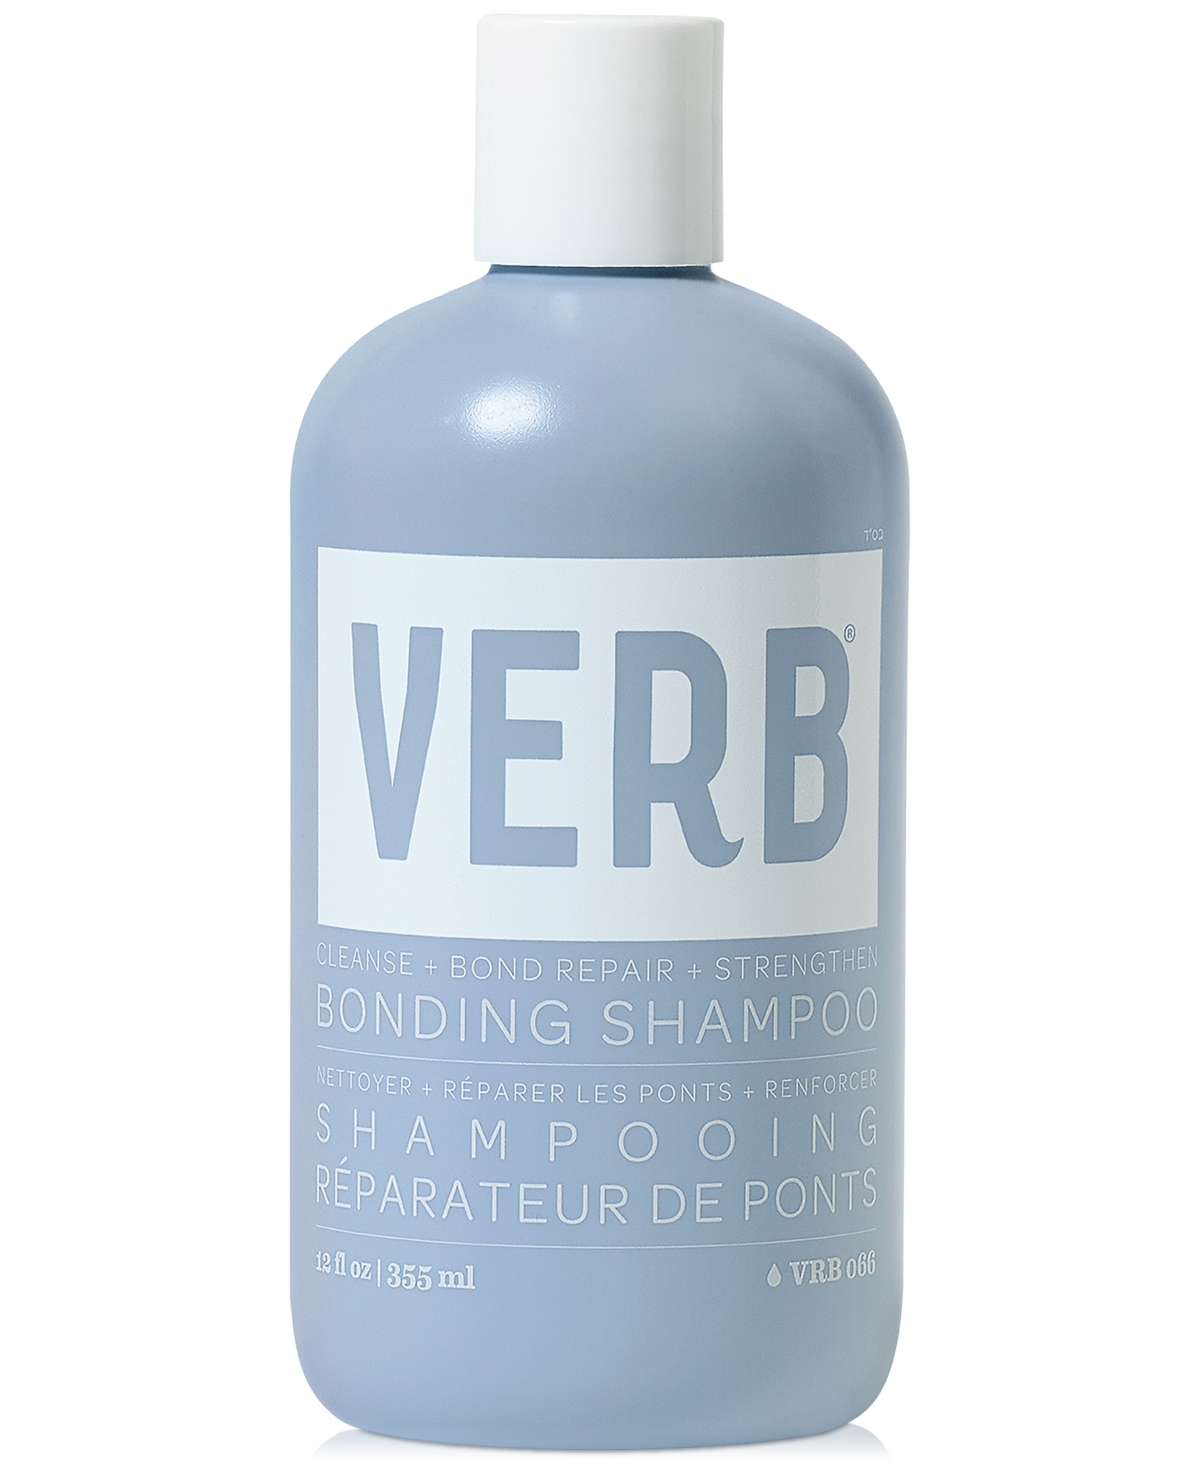 Verb Bonding Shampoo, 12 Oz.